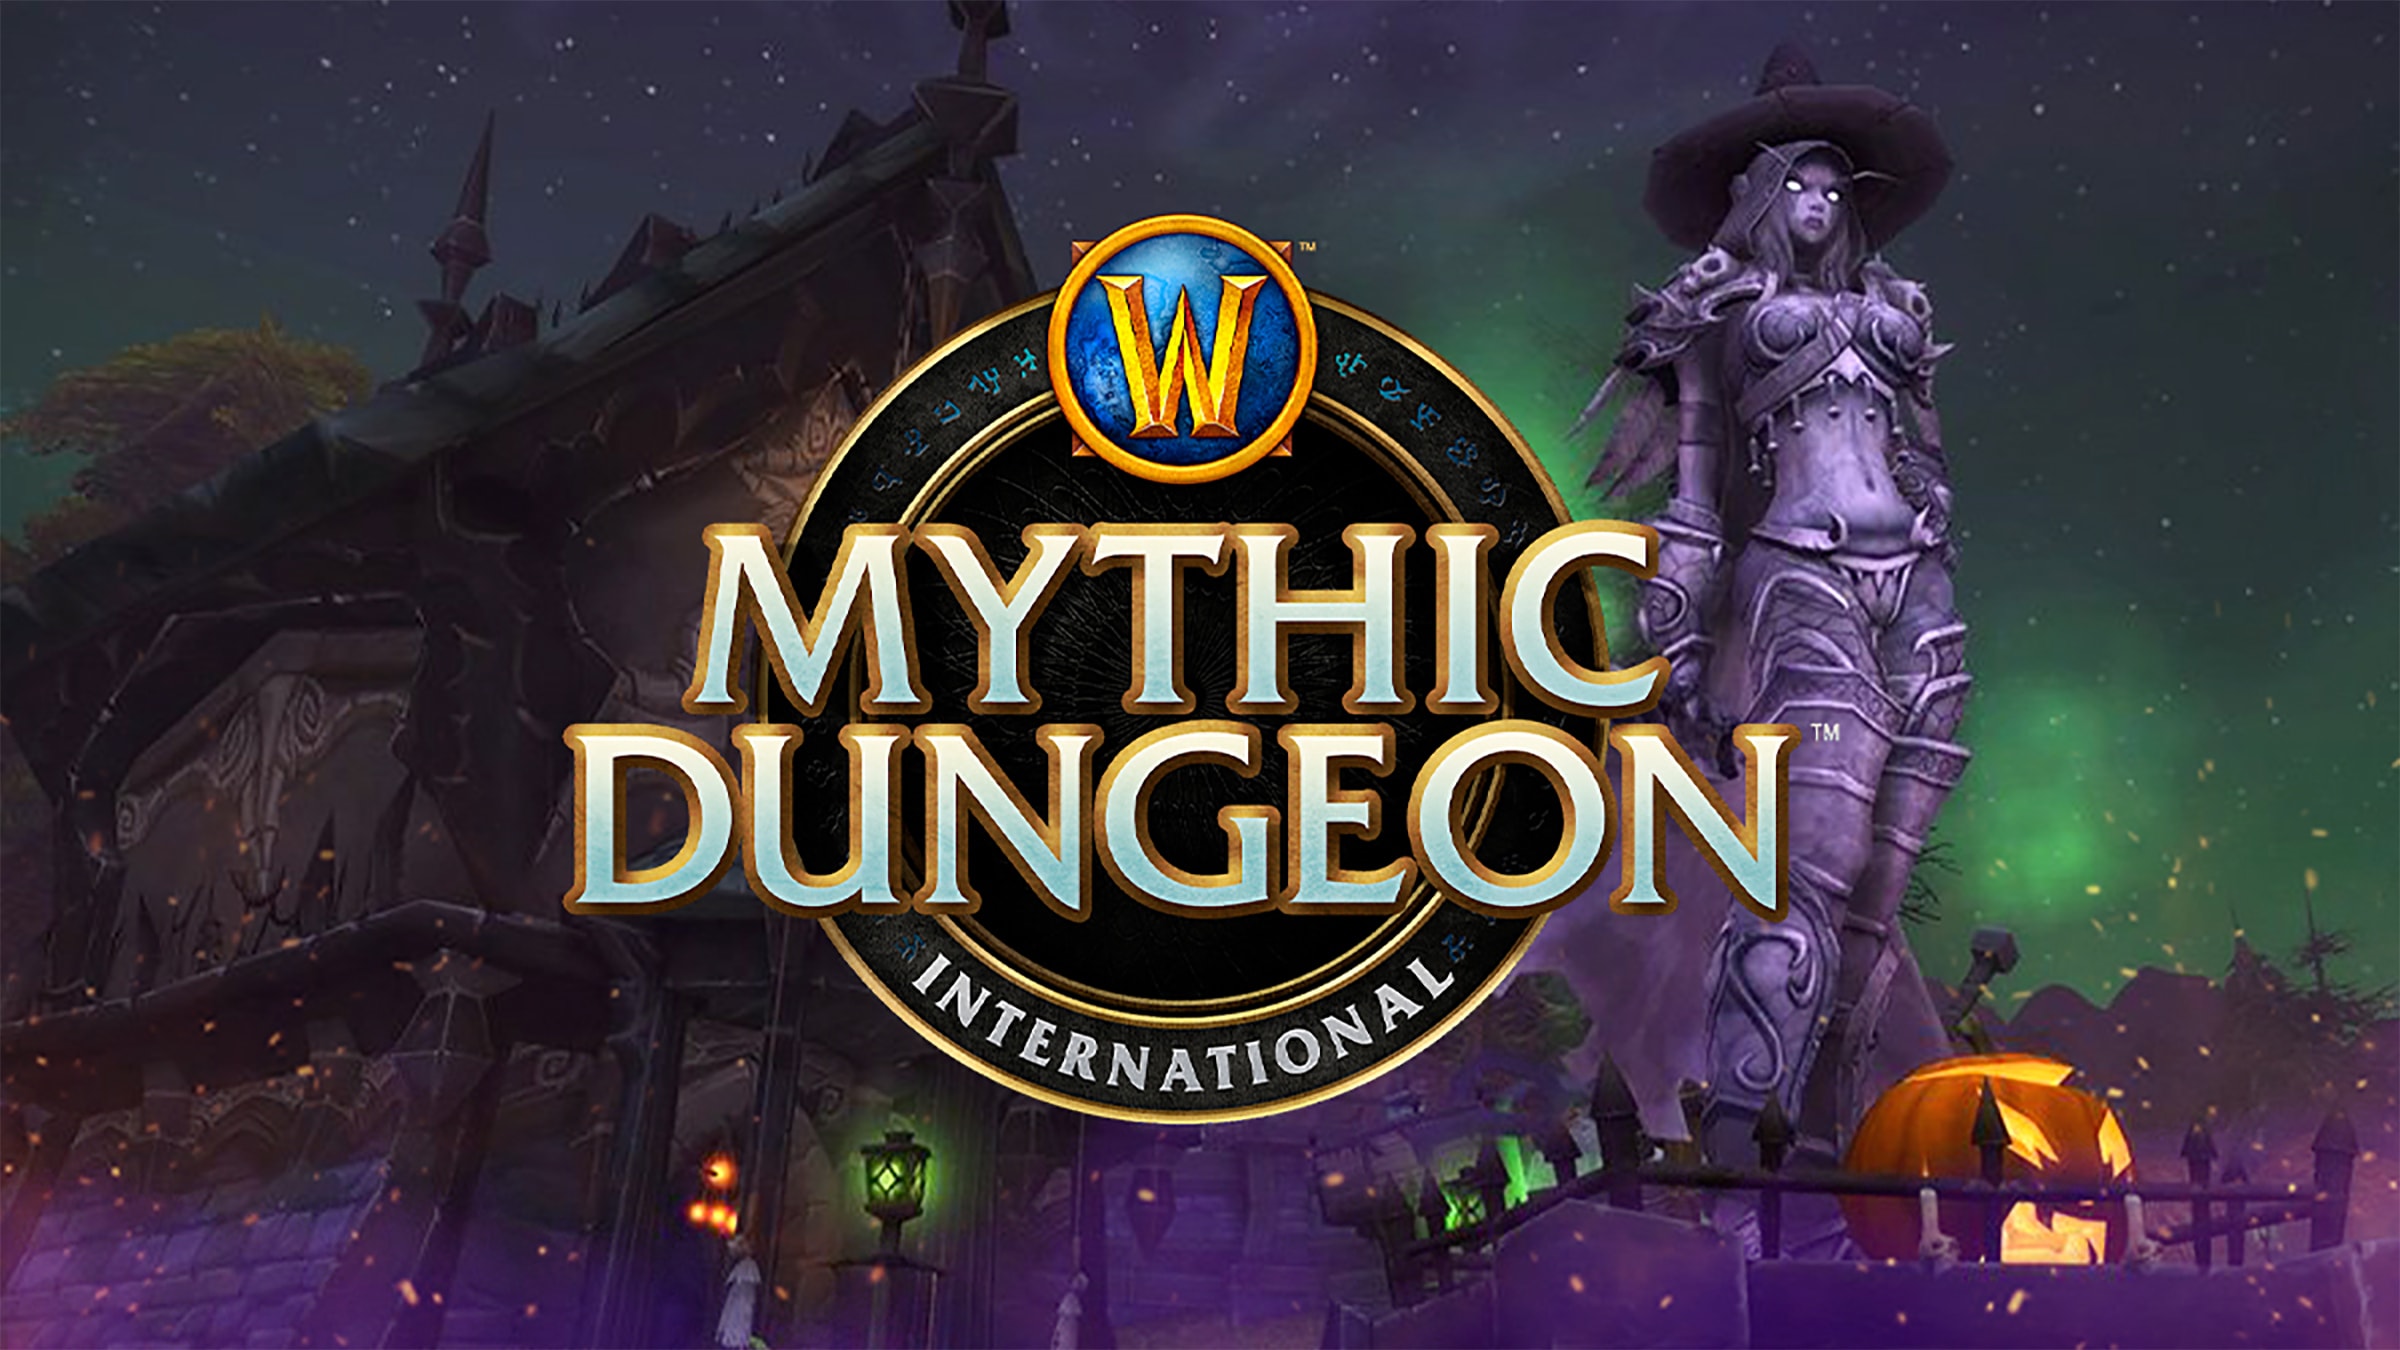 Global Finals 2021 des Mythic Dungeon International!